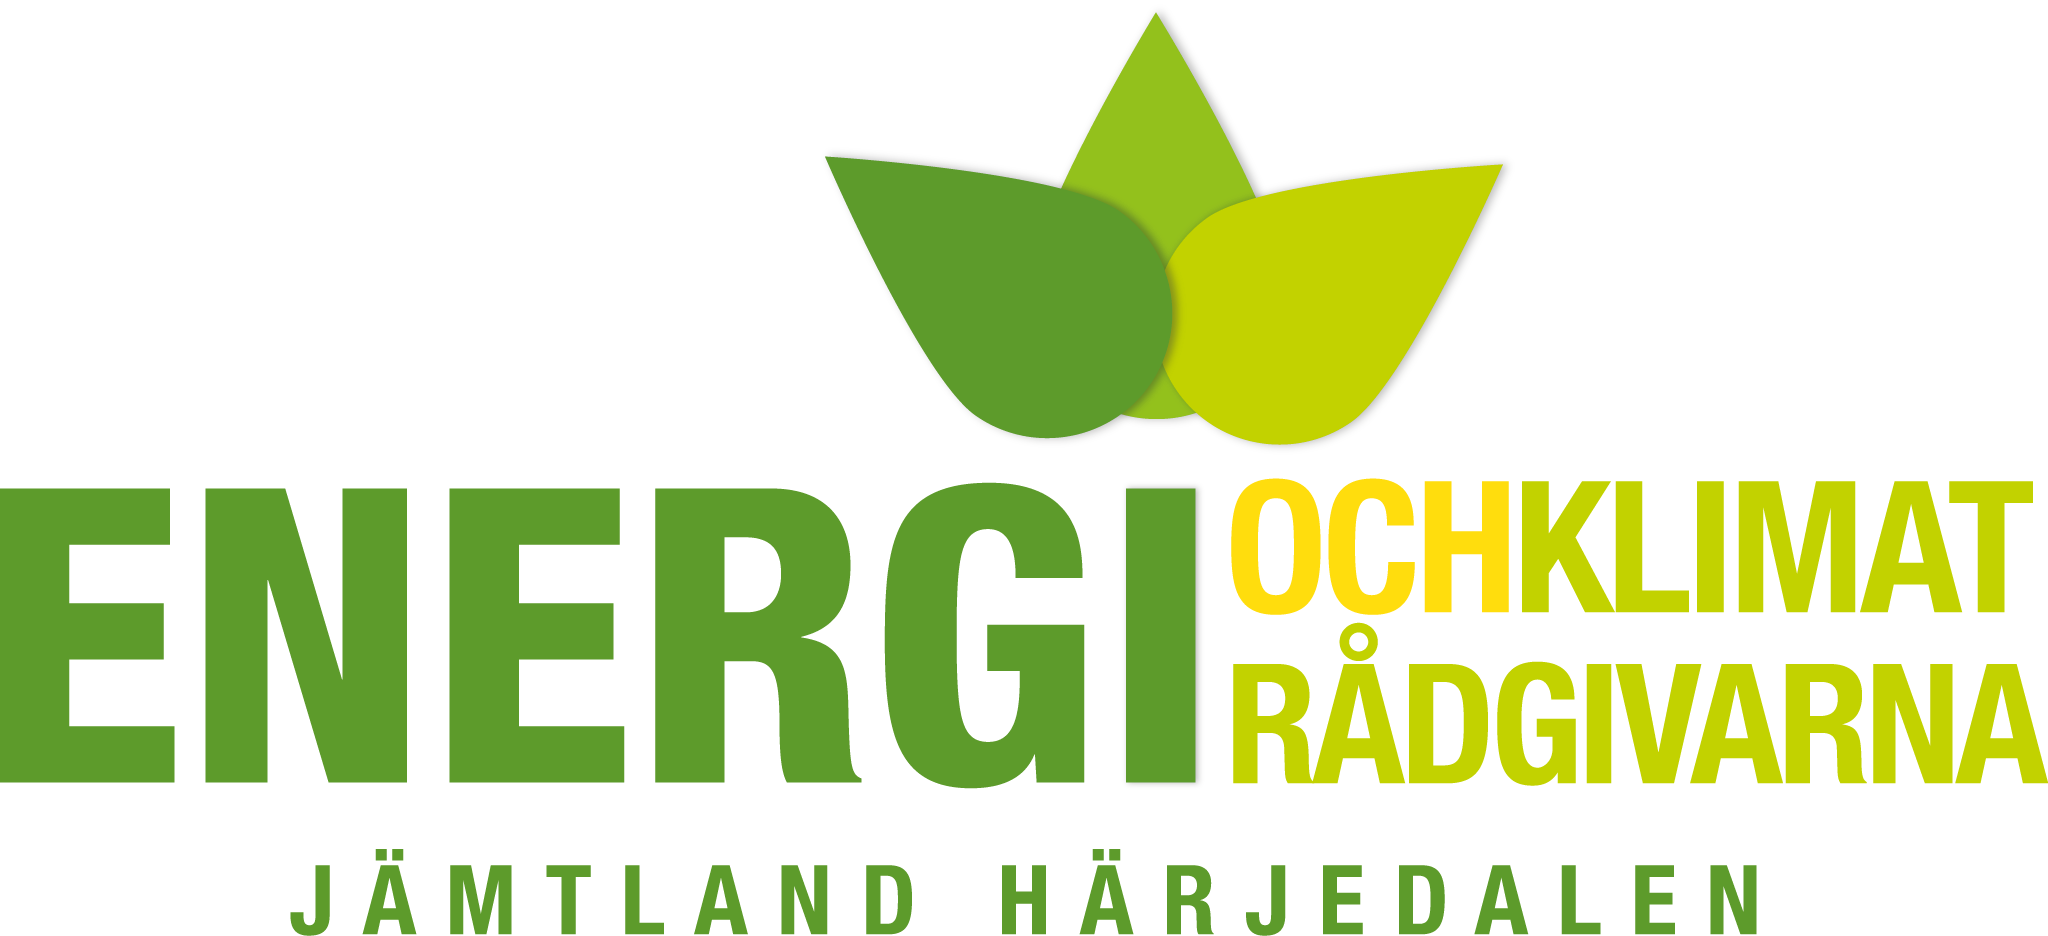 Logotyp: Energi och klimat rådgivarna Jämtland Härjedalen.